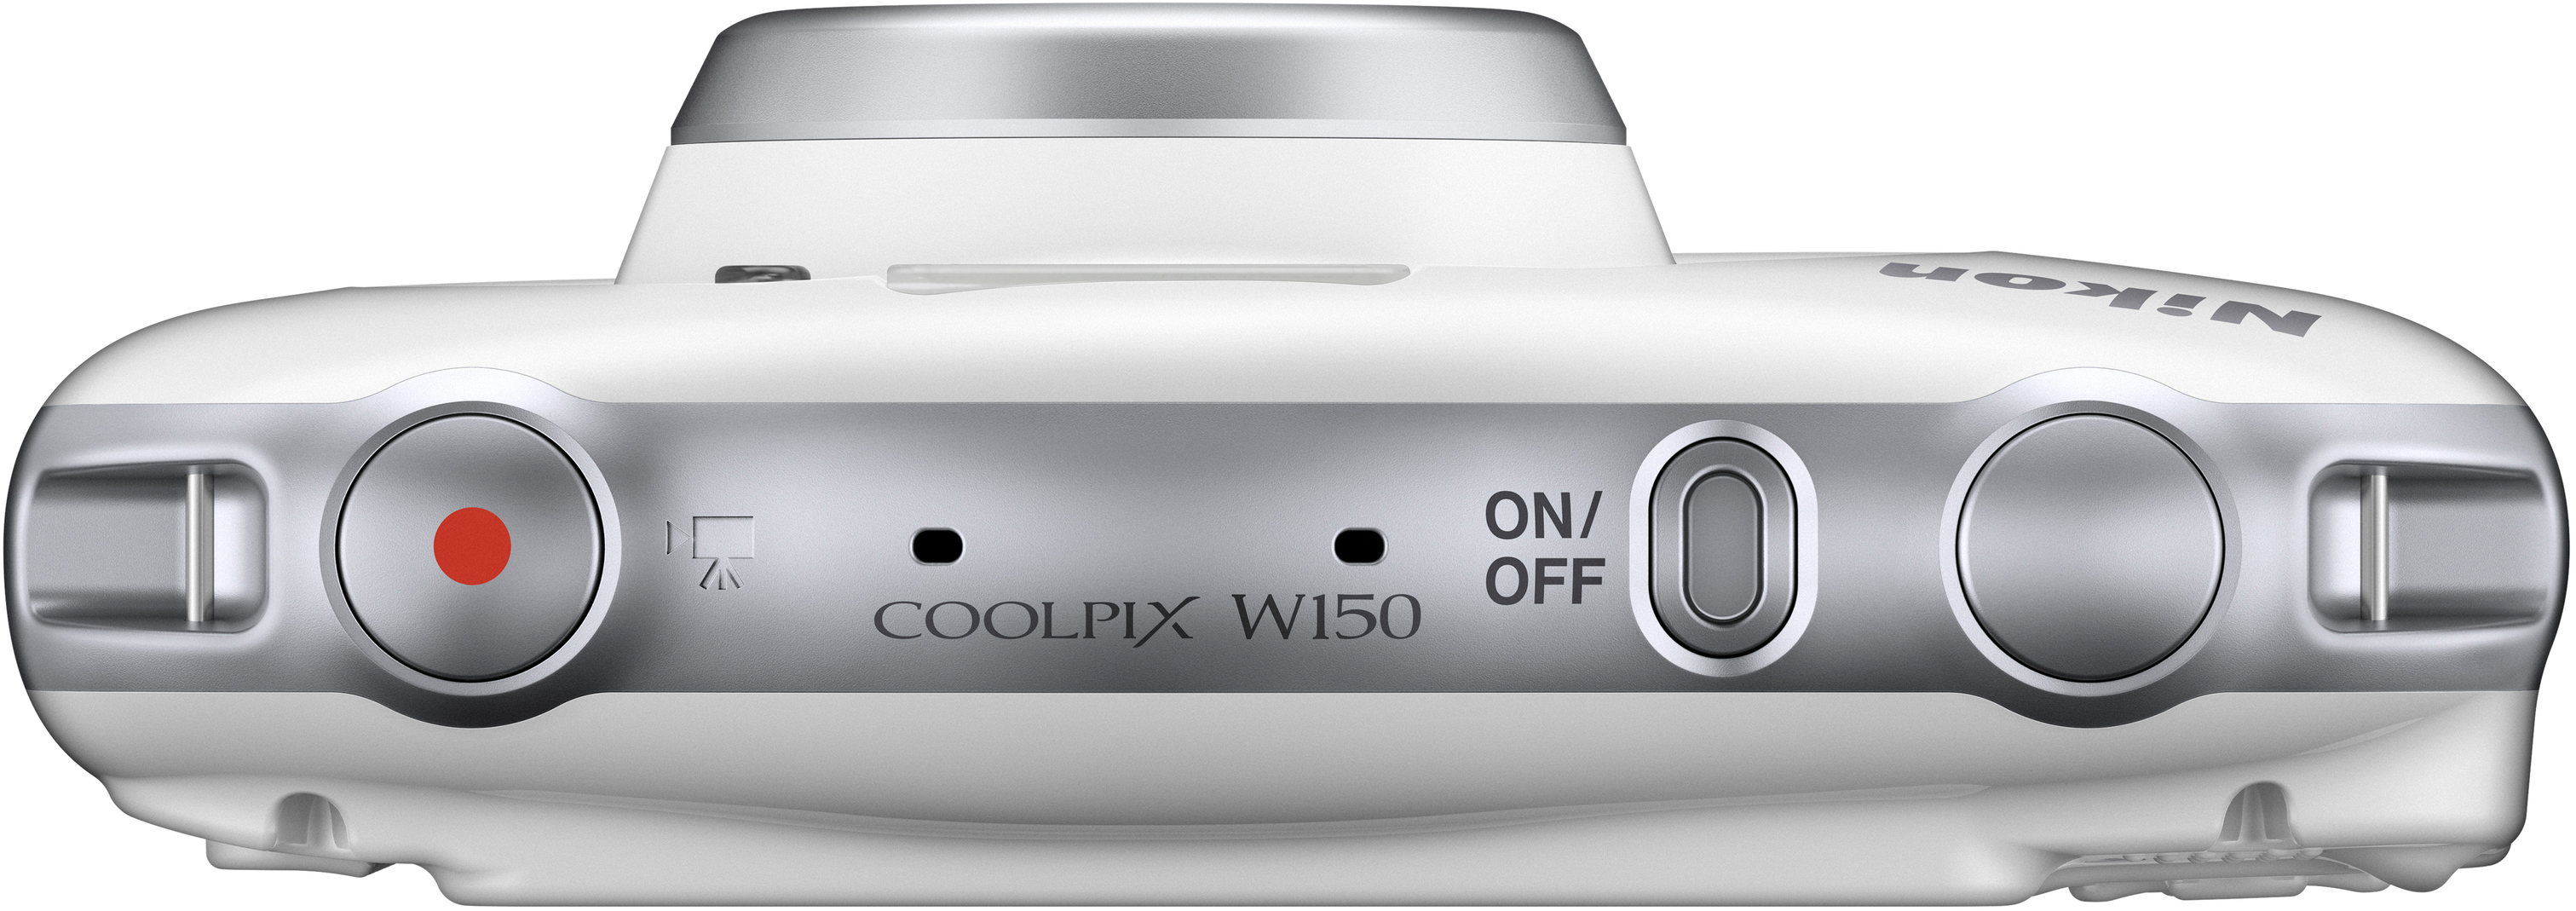 NIKON W 150 LCD-TFT Kit fach opt. Rucksack Zoom, 3 Weiß, Digitalkamera